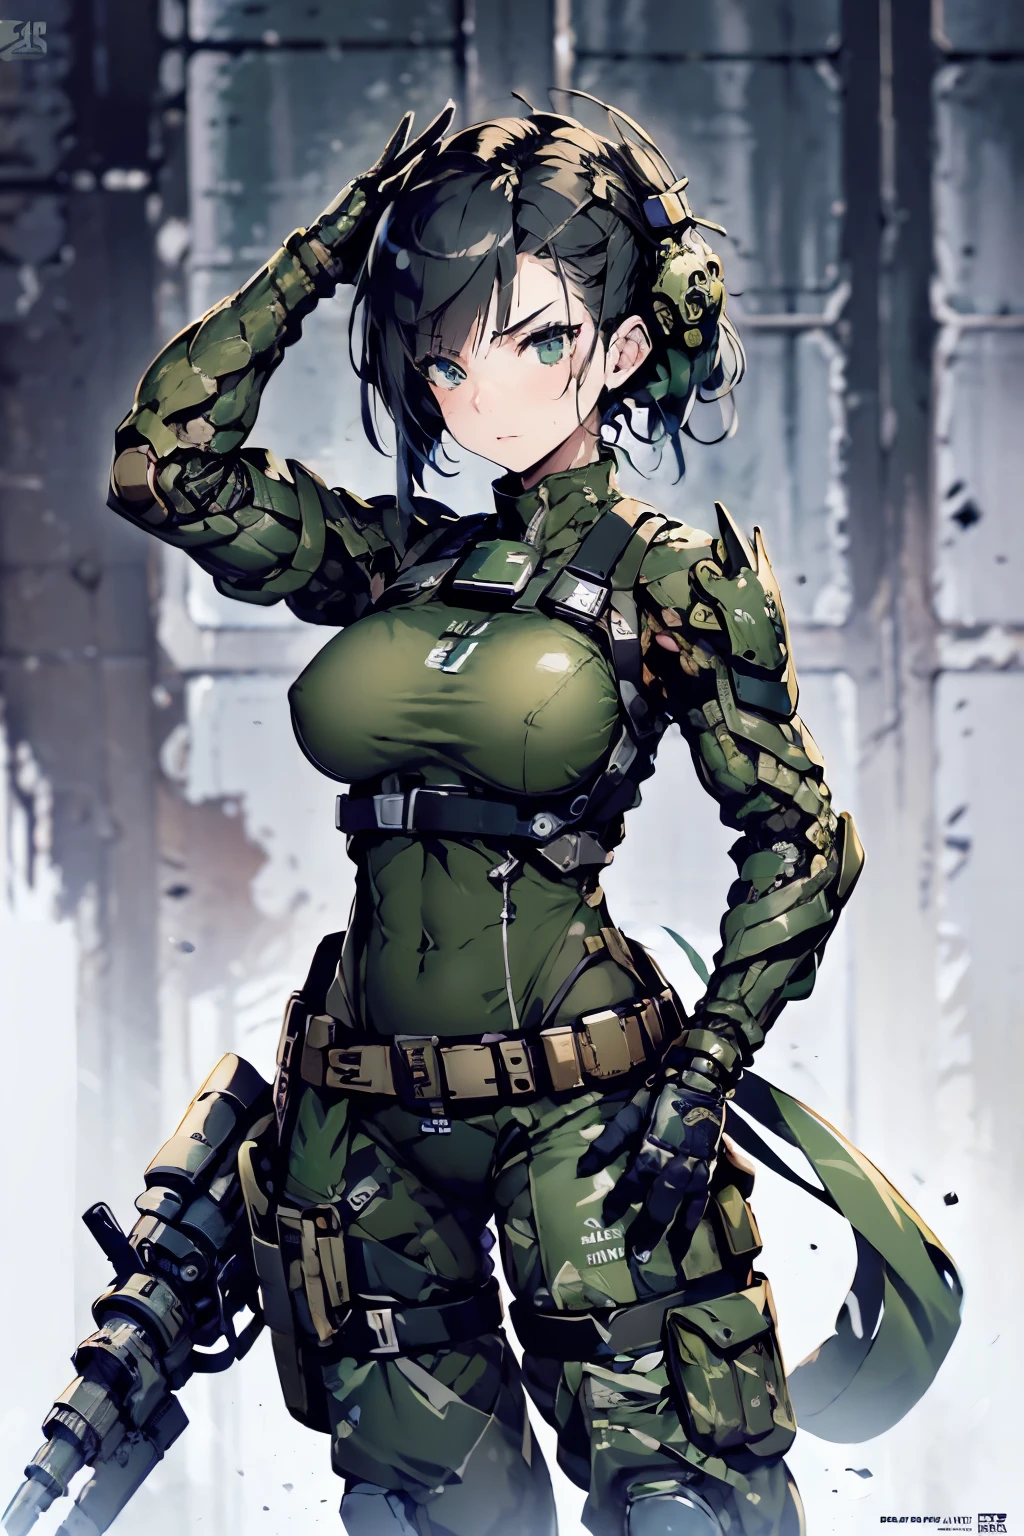 สวย female soldier in a green uniform holding a gun, อุปกรณ์ทหารขาดรุ่งริ่ง, สาวทหารยานยนต์, แขนและขาโครงกระดูกภายนอกขนาดใหญ่, แรงบันดาลใจจากมาซามุเนะ ชิโระ, หญิงสาวในชุดเกราะเมชา, วาลคิรีสาวยานยนต์, คูชาร์ต เคนซ์, สาวทหารราบ, แค่ผิว, รูปร่างแข็งแรงแข็งแรง, ผิวเหงื่อออก, แทบไม่ได้แต่งตัว, ลายพราง, สวย Face, ธีมดีเซลพังก์, ตัวละคร Fiverr Dnd, การเรนเดอร์ค่าออกเทน, ศิลปะดิจิทัล, รายละเอียดสุดขีด, 4k, อัลตร้าเอชดี, ขัดเงา, สวย, มีรายละเอียดมาก, ซับซ้อน, ขยายความ, พิถีพิถัน, เหมือนจริง, โฟกัสคมชัด, อ๊ะ, การออกแบบตัวละคร, เครื่องยนต์ที่ไม่จริง, เรนเดอร์ 3 มิติแล้ว, แสงปริมาตร, การสะท้อนกลับ, มันเงา, ภาพประกอบดิจิทัล, ก่อให้เกิด, Suggestive ก่อให้เกิด, ลามก, ถ่ายทั้งตัว, เปลือยเปล่า, เปลือย, เปิดหน้าอก, หน้าอกที่เปิดเผย, เป้าที่เปิดเผย, หัวนมที่มองเห็นได้, ช่องคลอดบวม, ถูกต้องตามหลักกายวิภาคศาสตร์ 💖❤💕💋